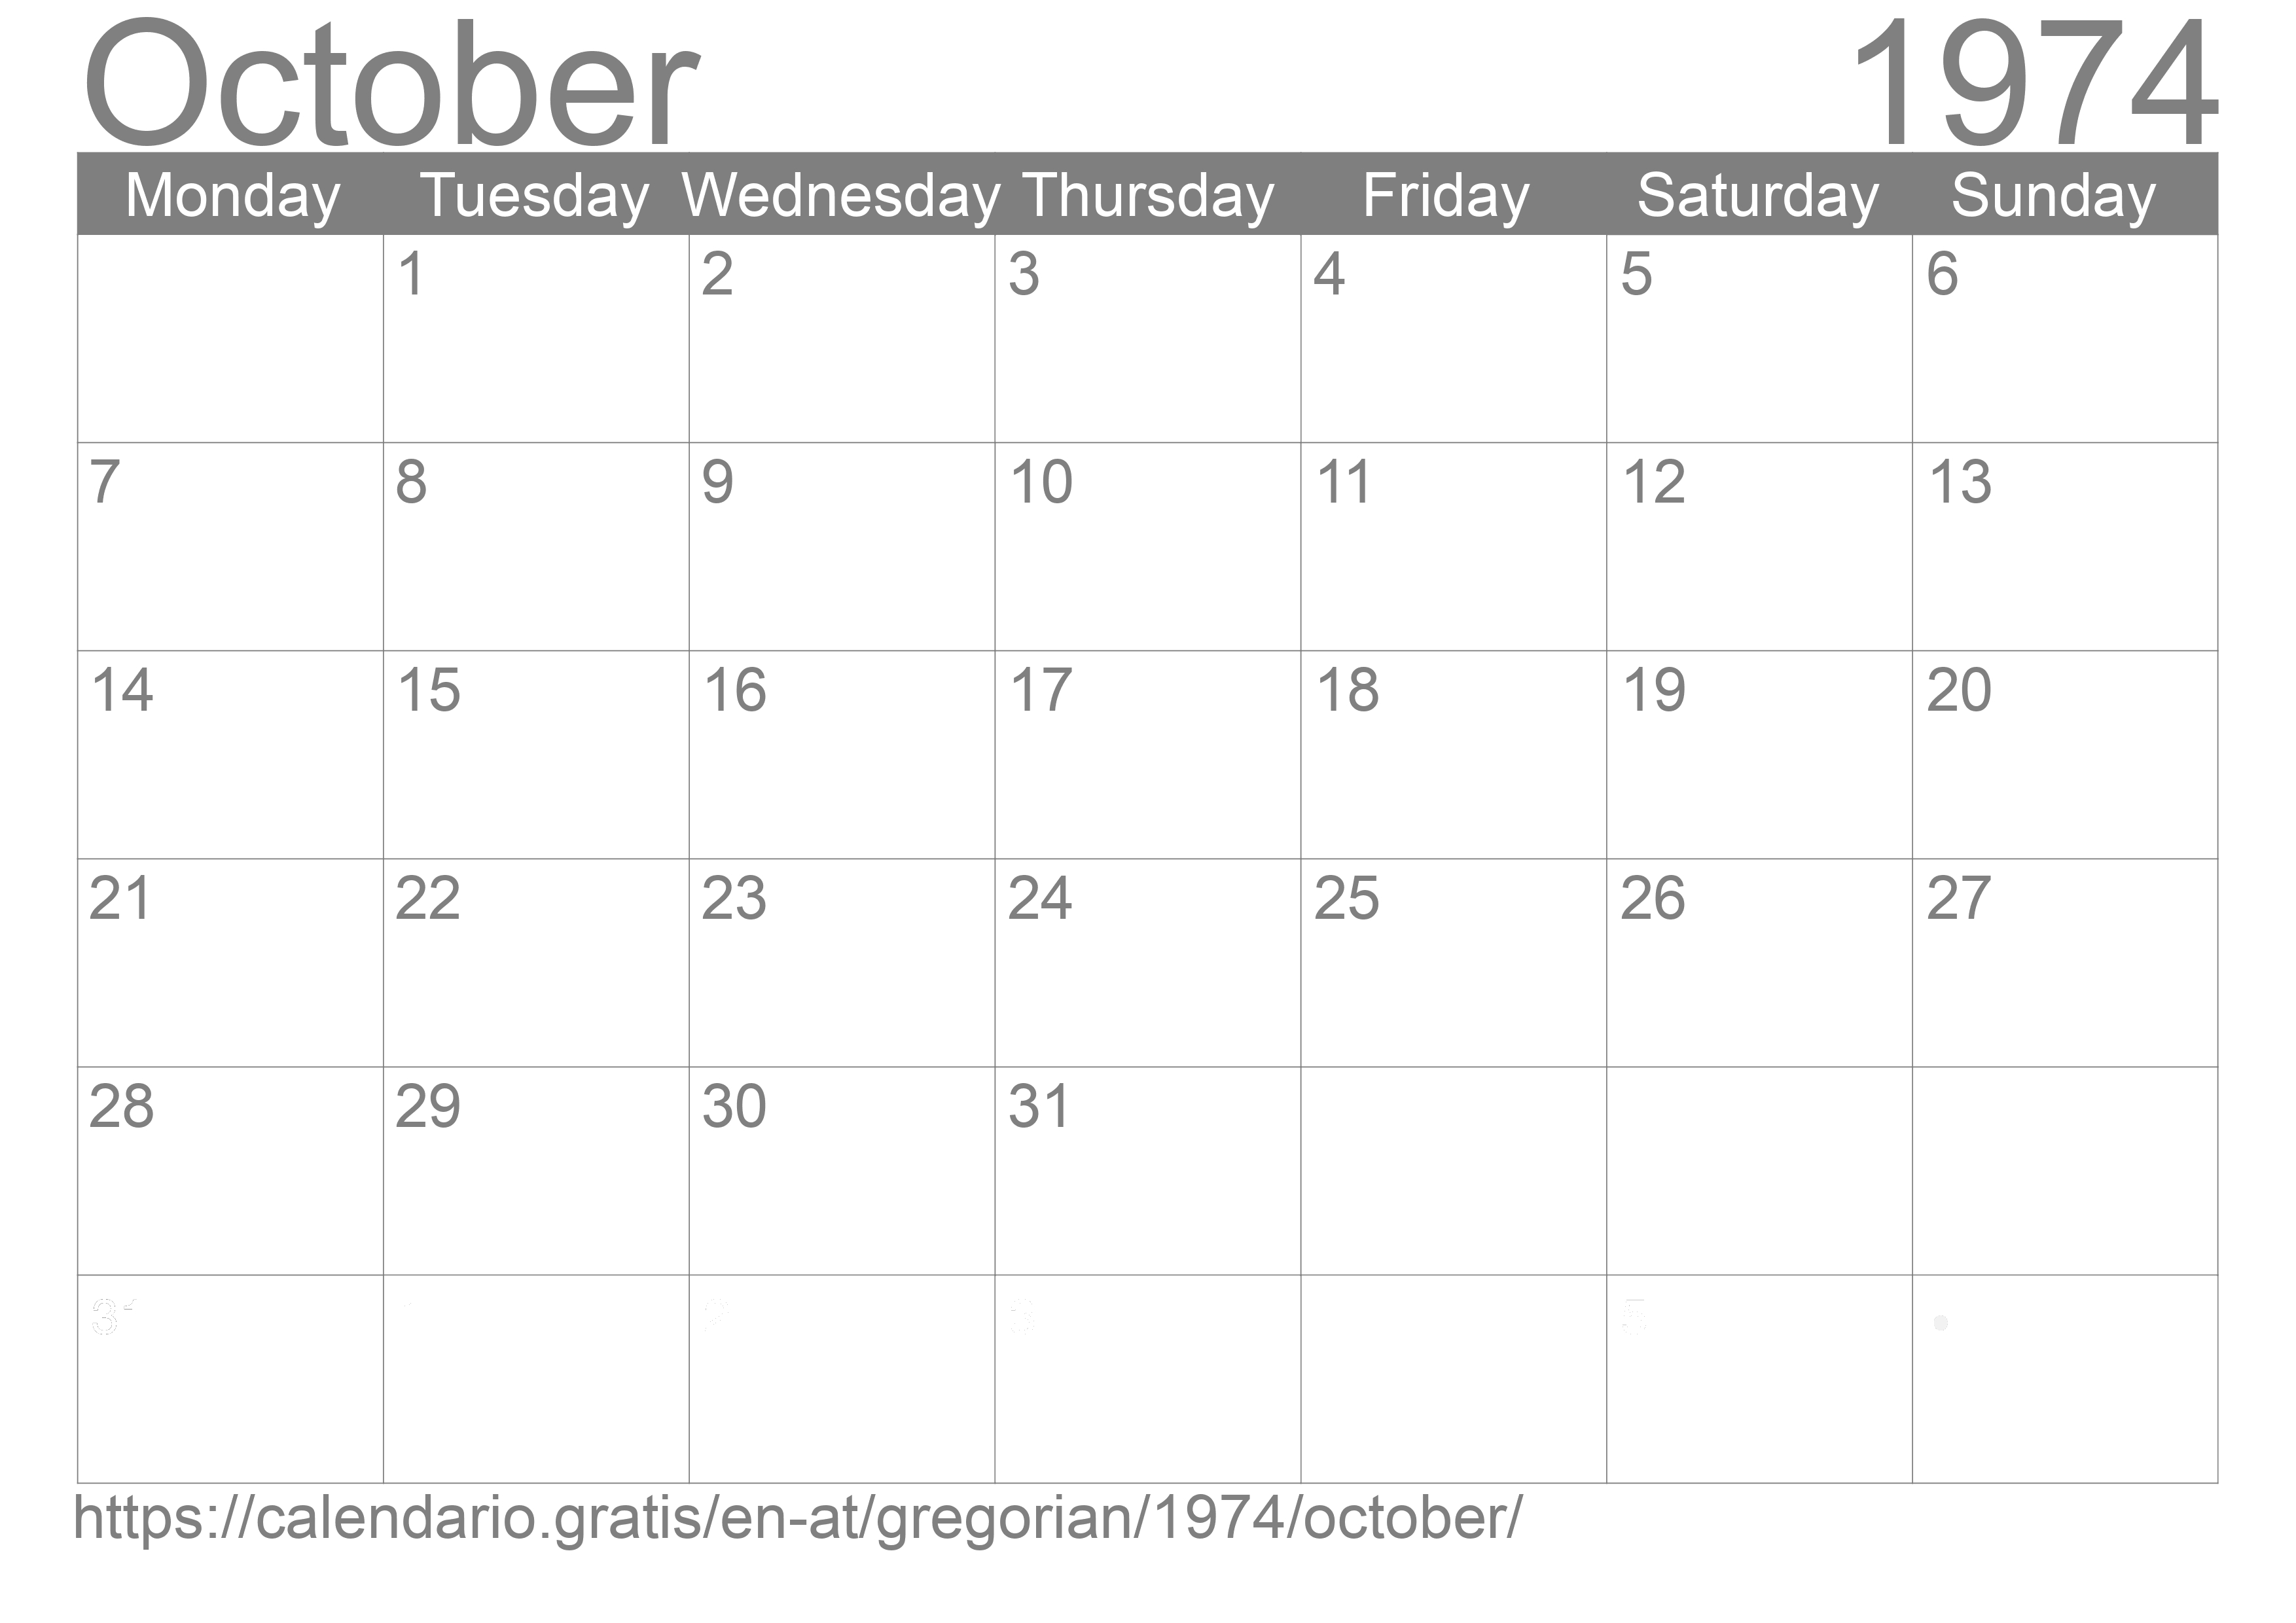 Calendar October 1974 to print